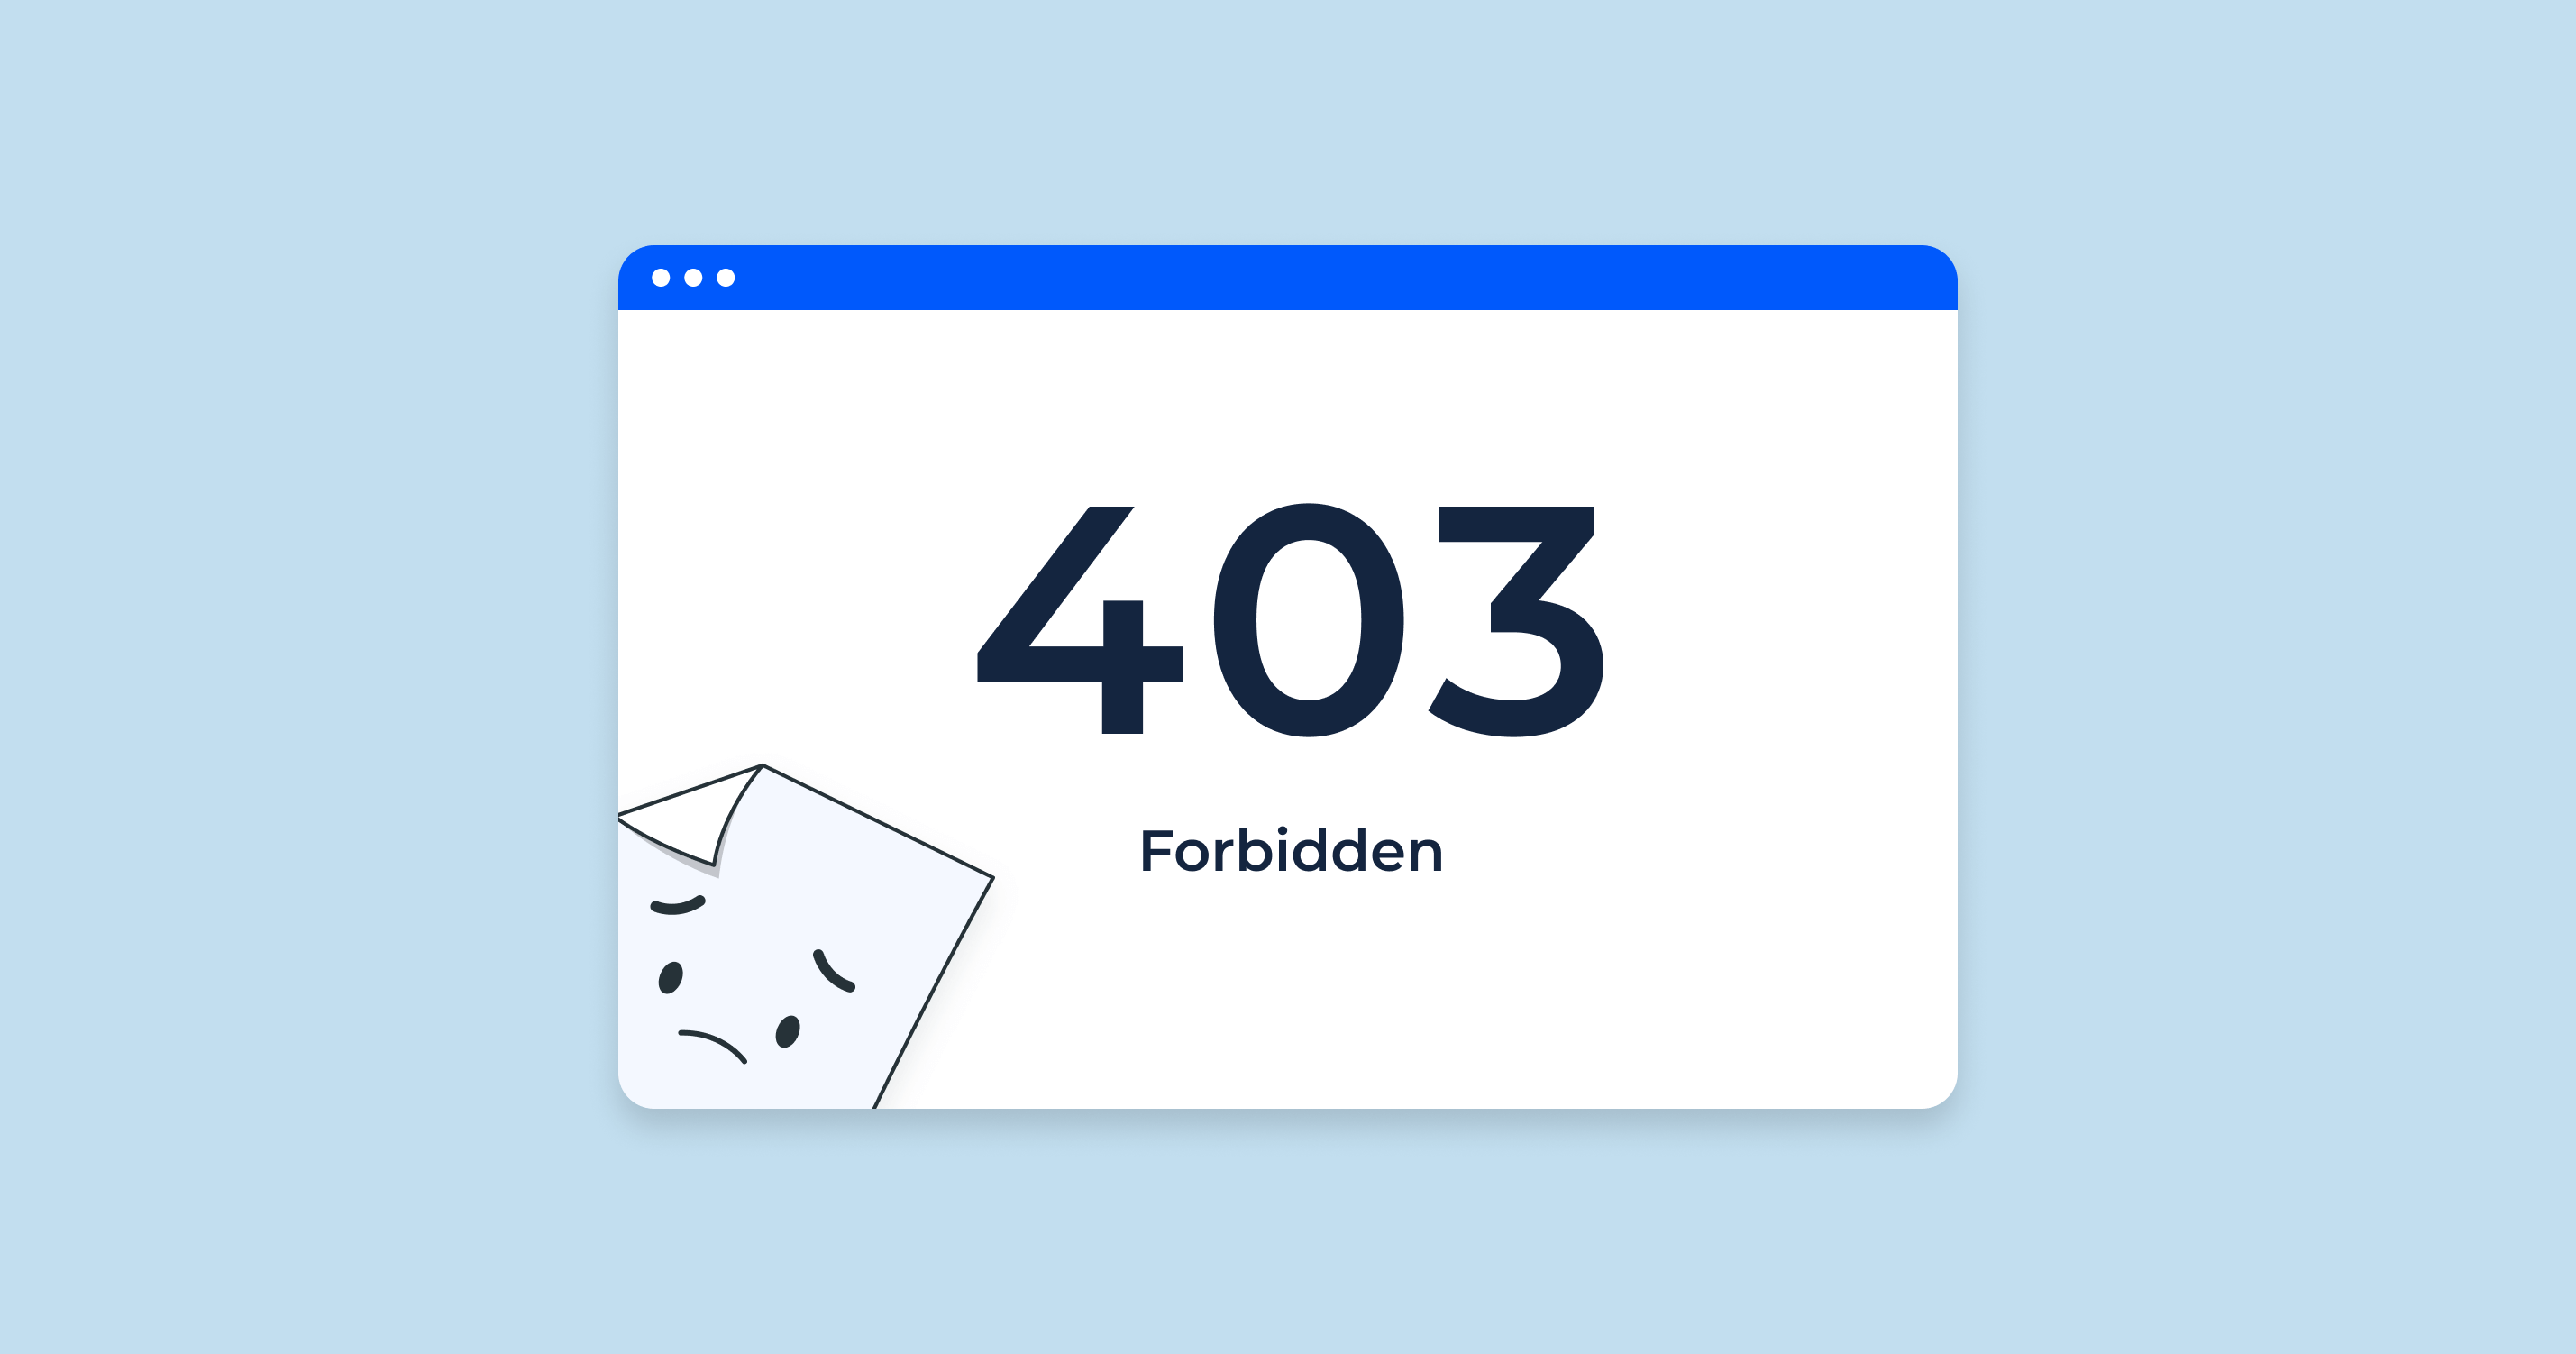 Diagnosing 403 Forbidden Errors